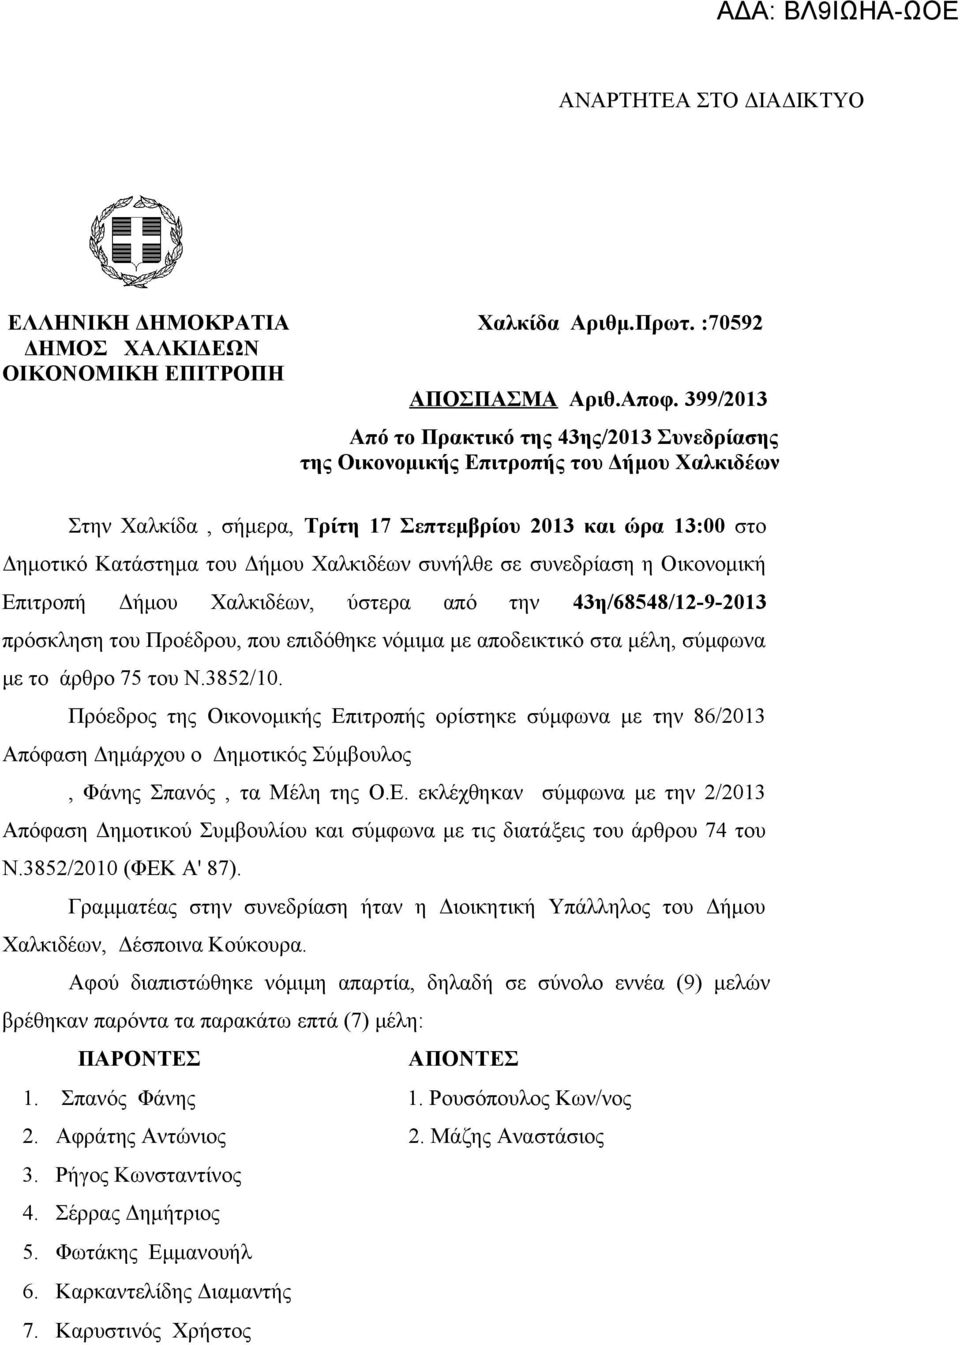 Χαλκιδέων συνήλθε σε συνεδρίαση η Οικονομική Επιτροπή Δήμου Χαλκιδέων, ύστερα από την 43η/68548/12-9-2013 πρόσκληση του Προέδρου, που επιδόθηκε νόμιμα με αποδεικτικό στα μέλη, σύμφωνα με το άρθρο 75